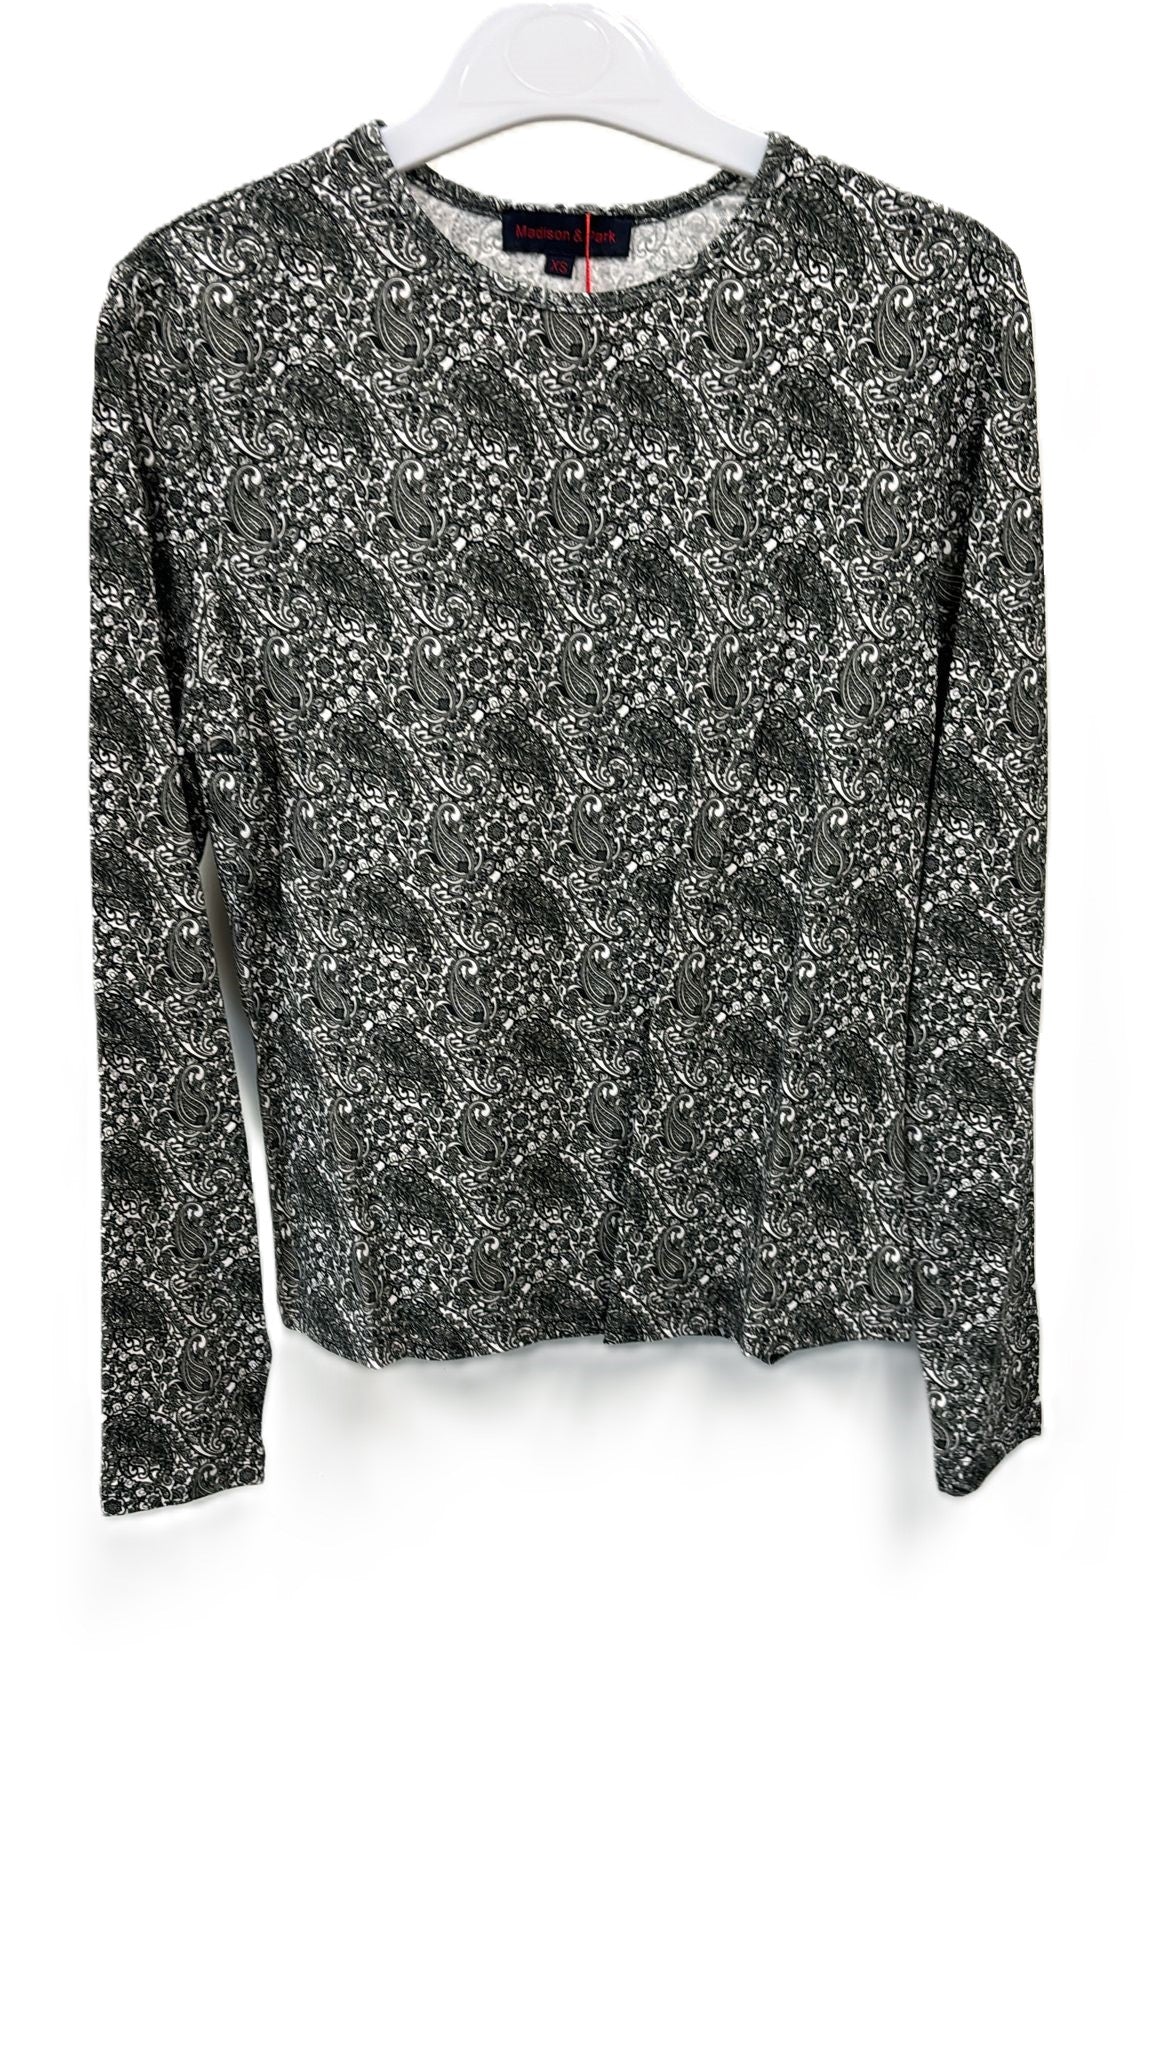 Grey Black Paisley Printed Knit Top